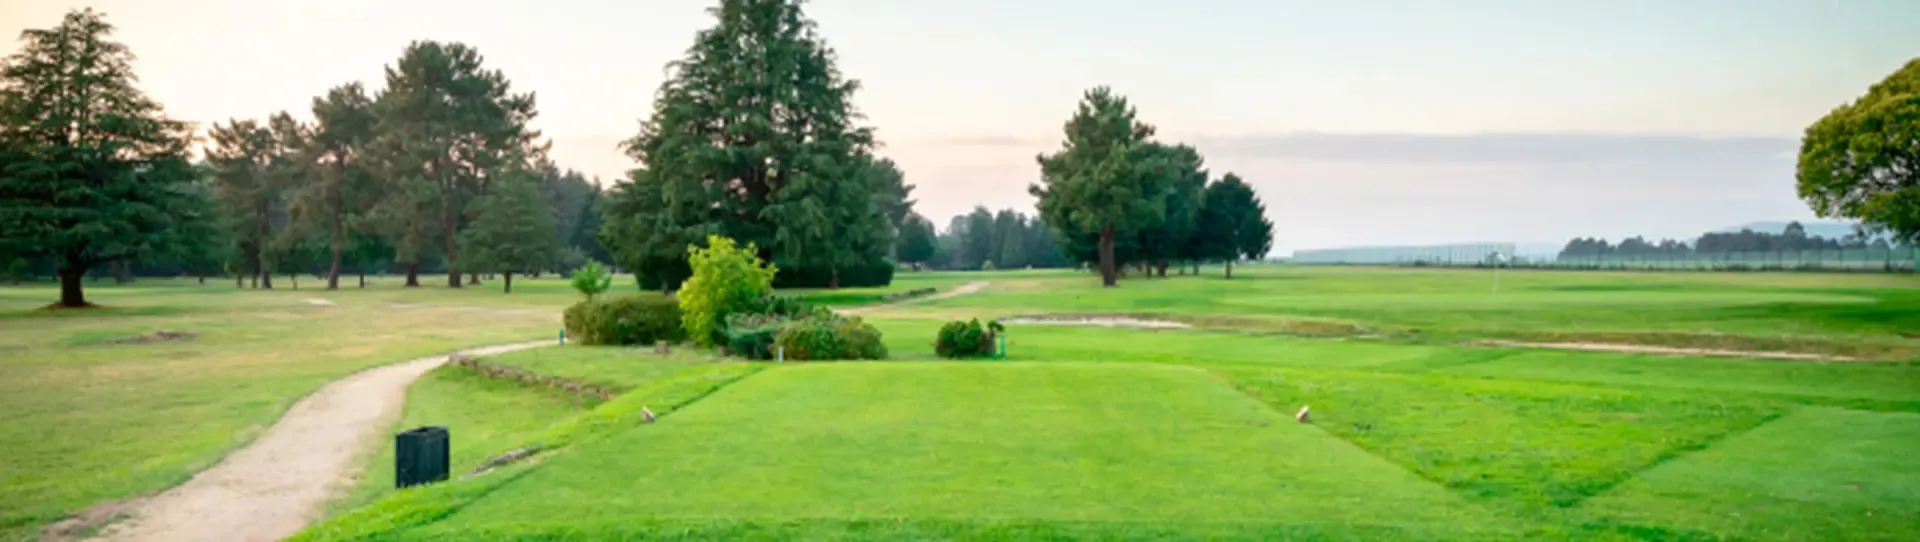 Spain golf courses - Real Aero Club de Vigo Golf Course - Photo 1